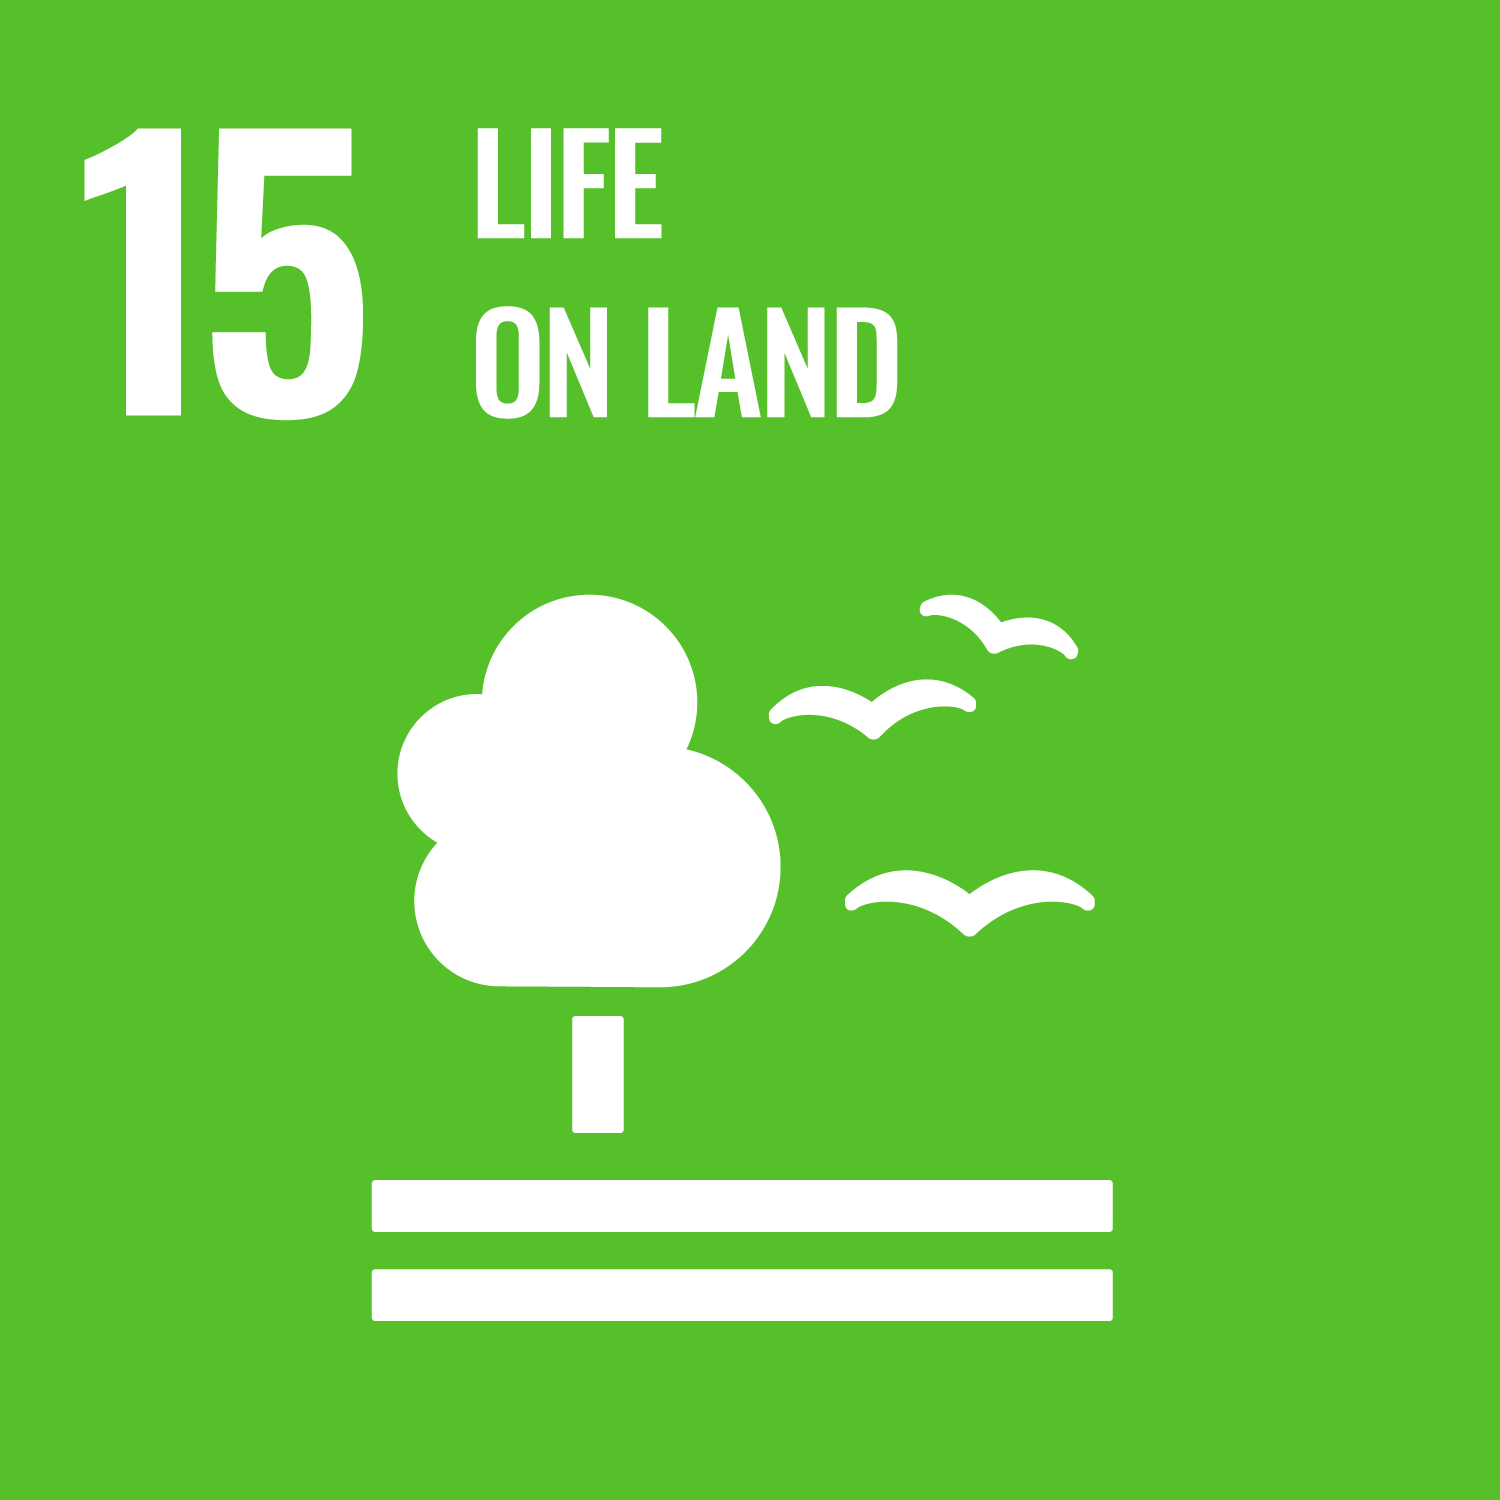 UN Sustainable Development Goal 15 - Life on Land